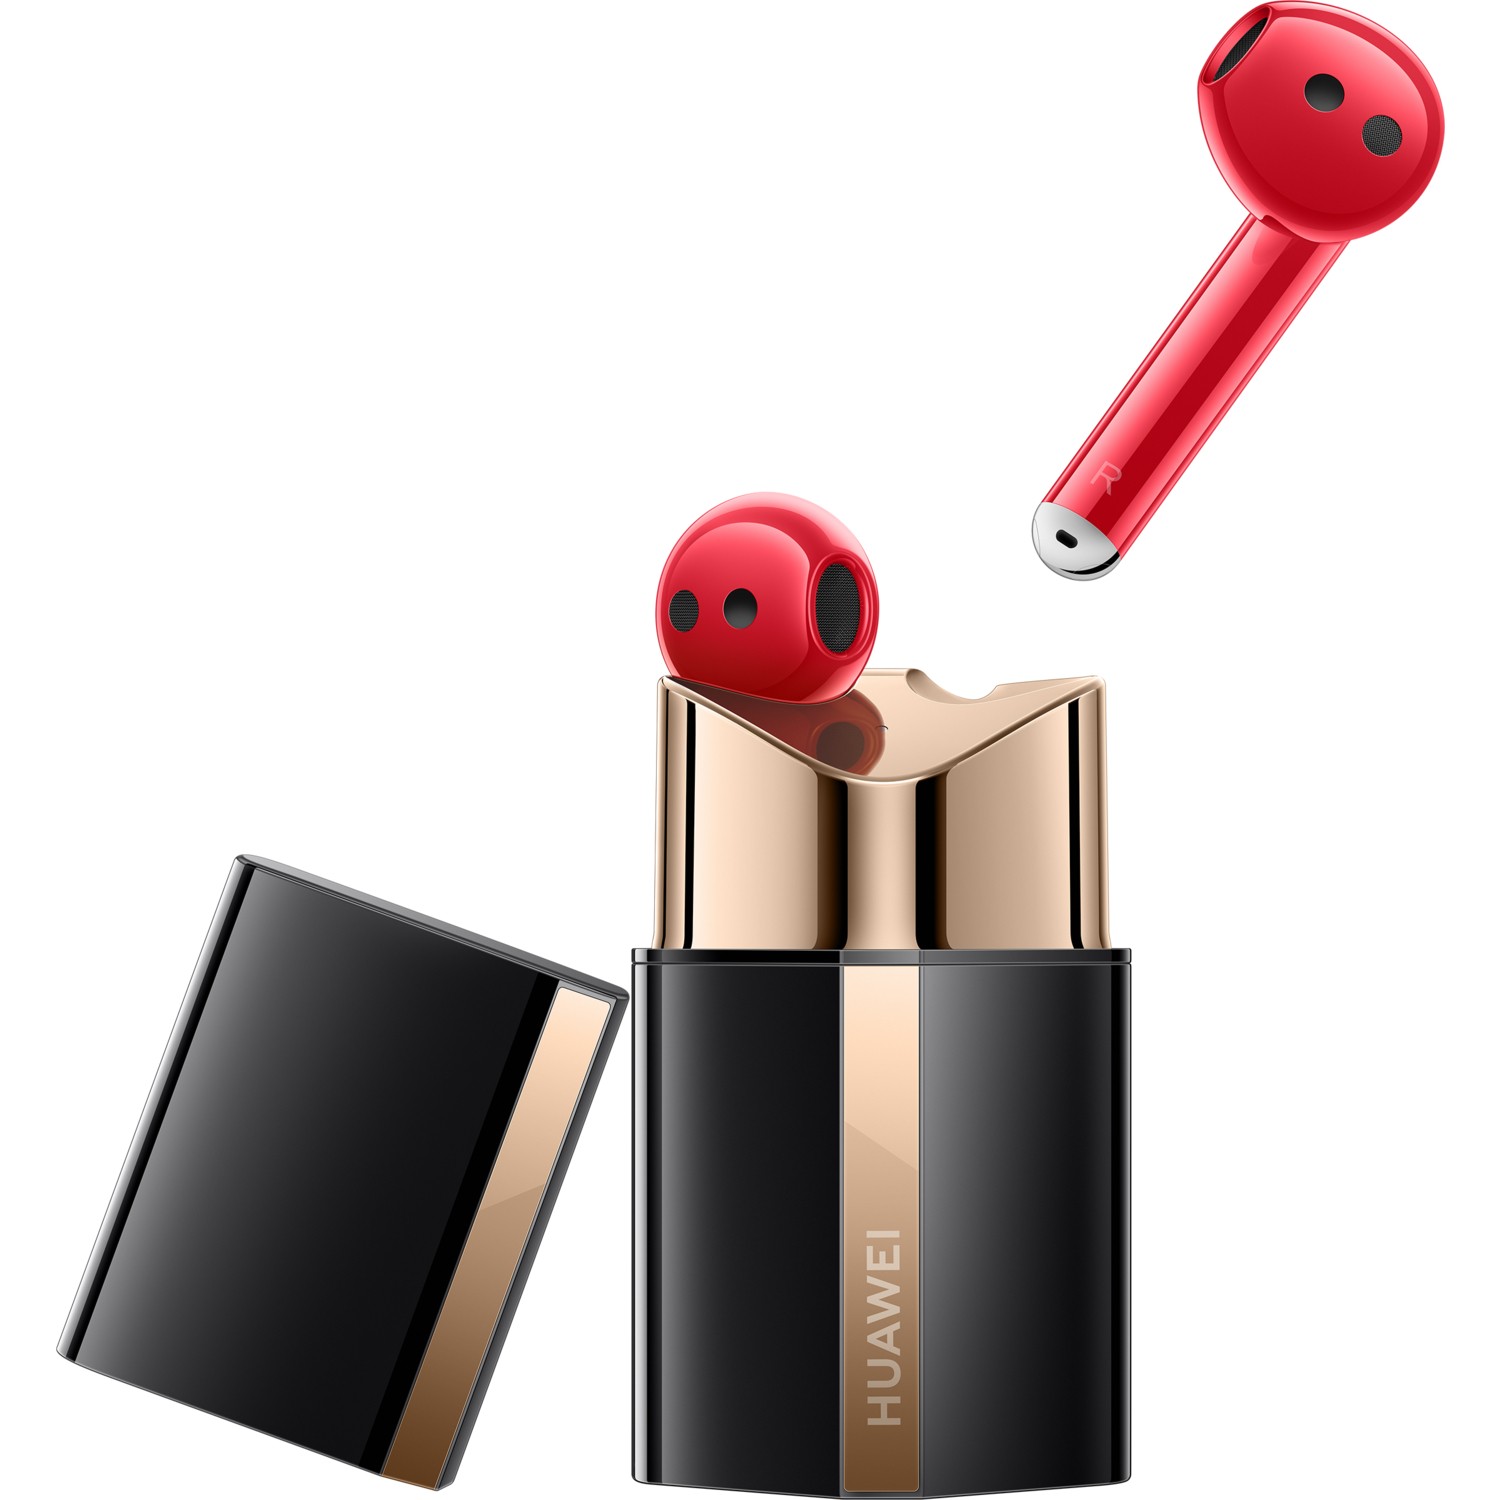 Huawei Freebuds Lipstick In-Ear Wireless Earphones- Red- No Warranty